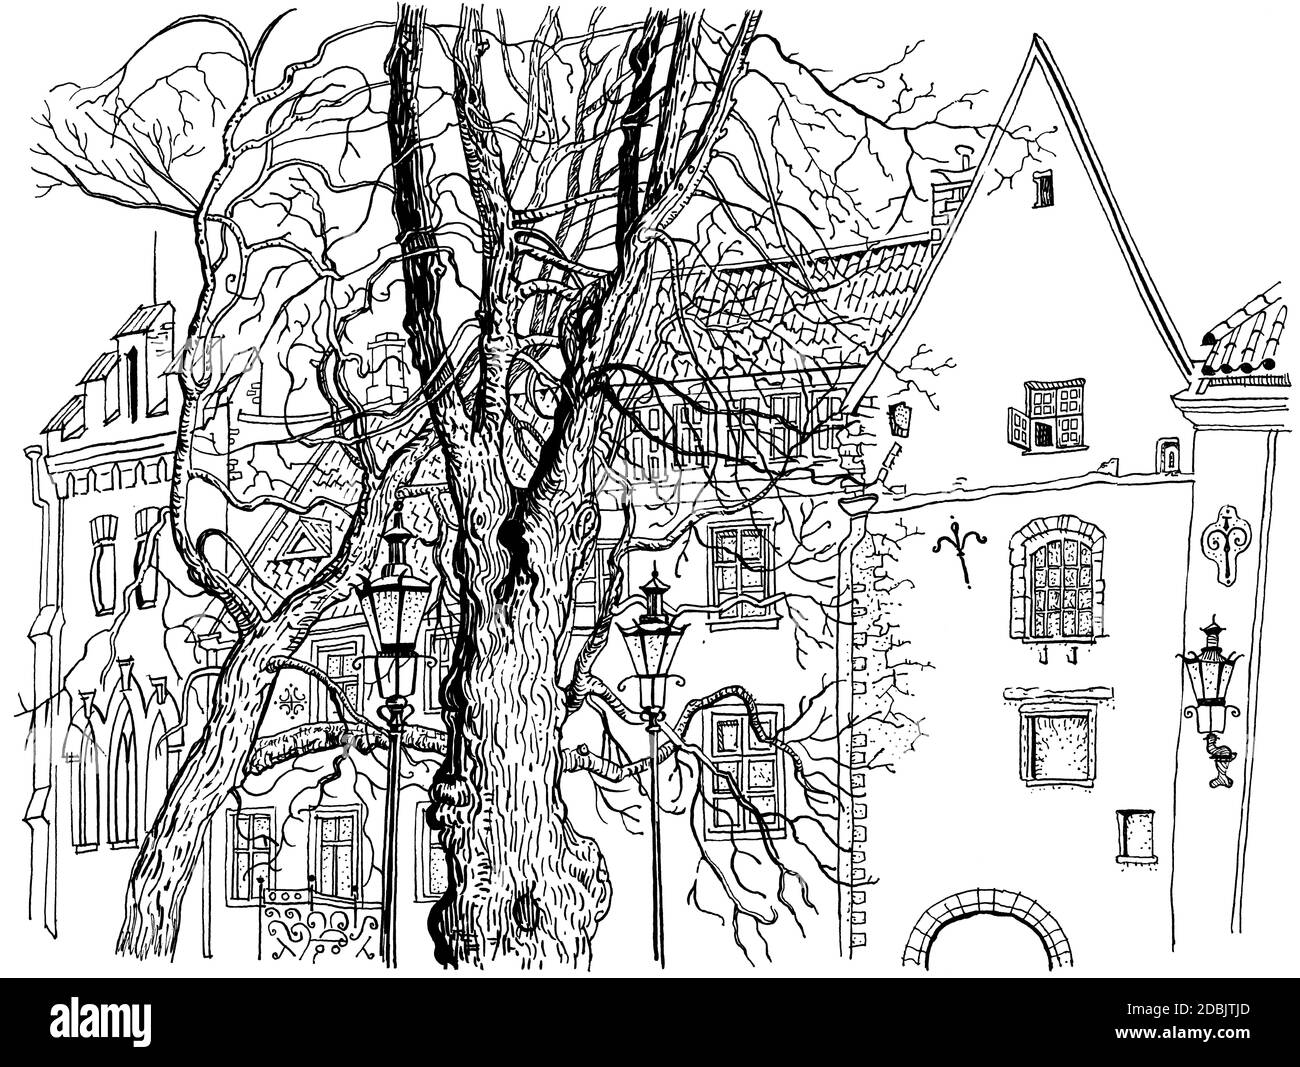 Vista del casco antiguo de Tallinn. Ilustración de pluma de tinta de estilo gráfico dibujado a mano. Arquitectura histórica, casas medievales, árboles. estados bálticos Foto de stock